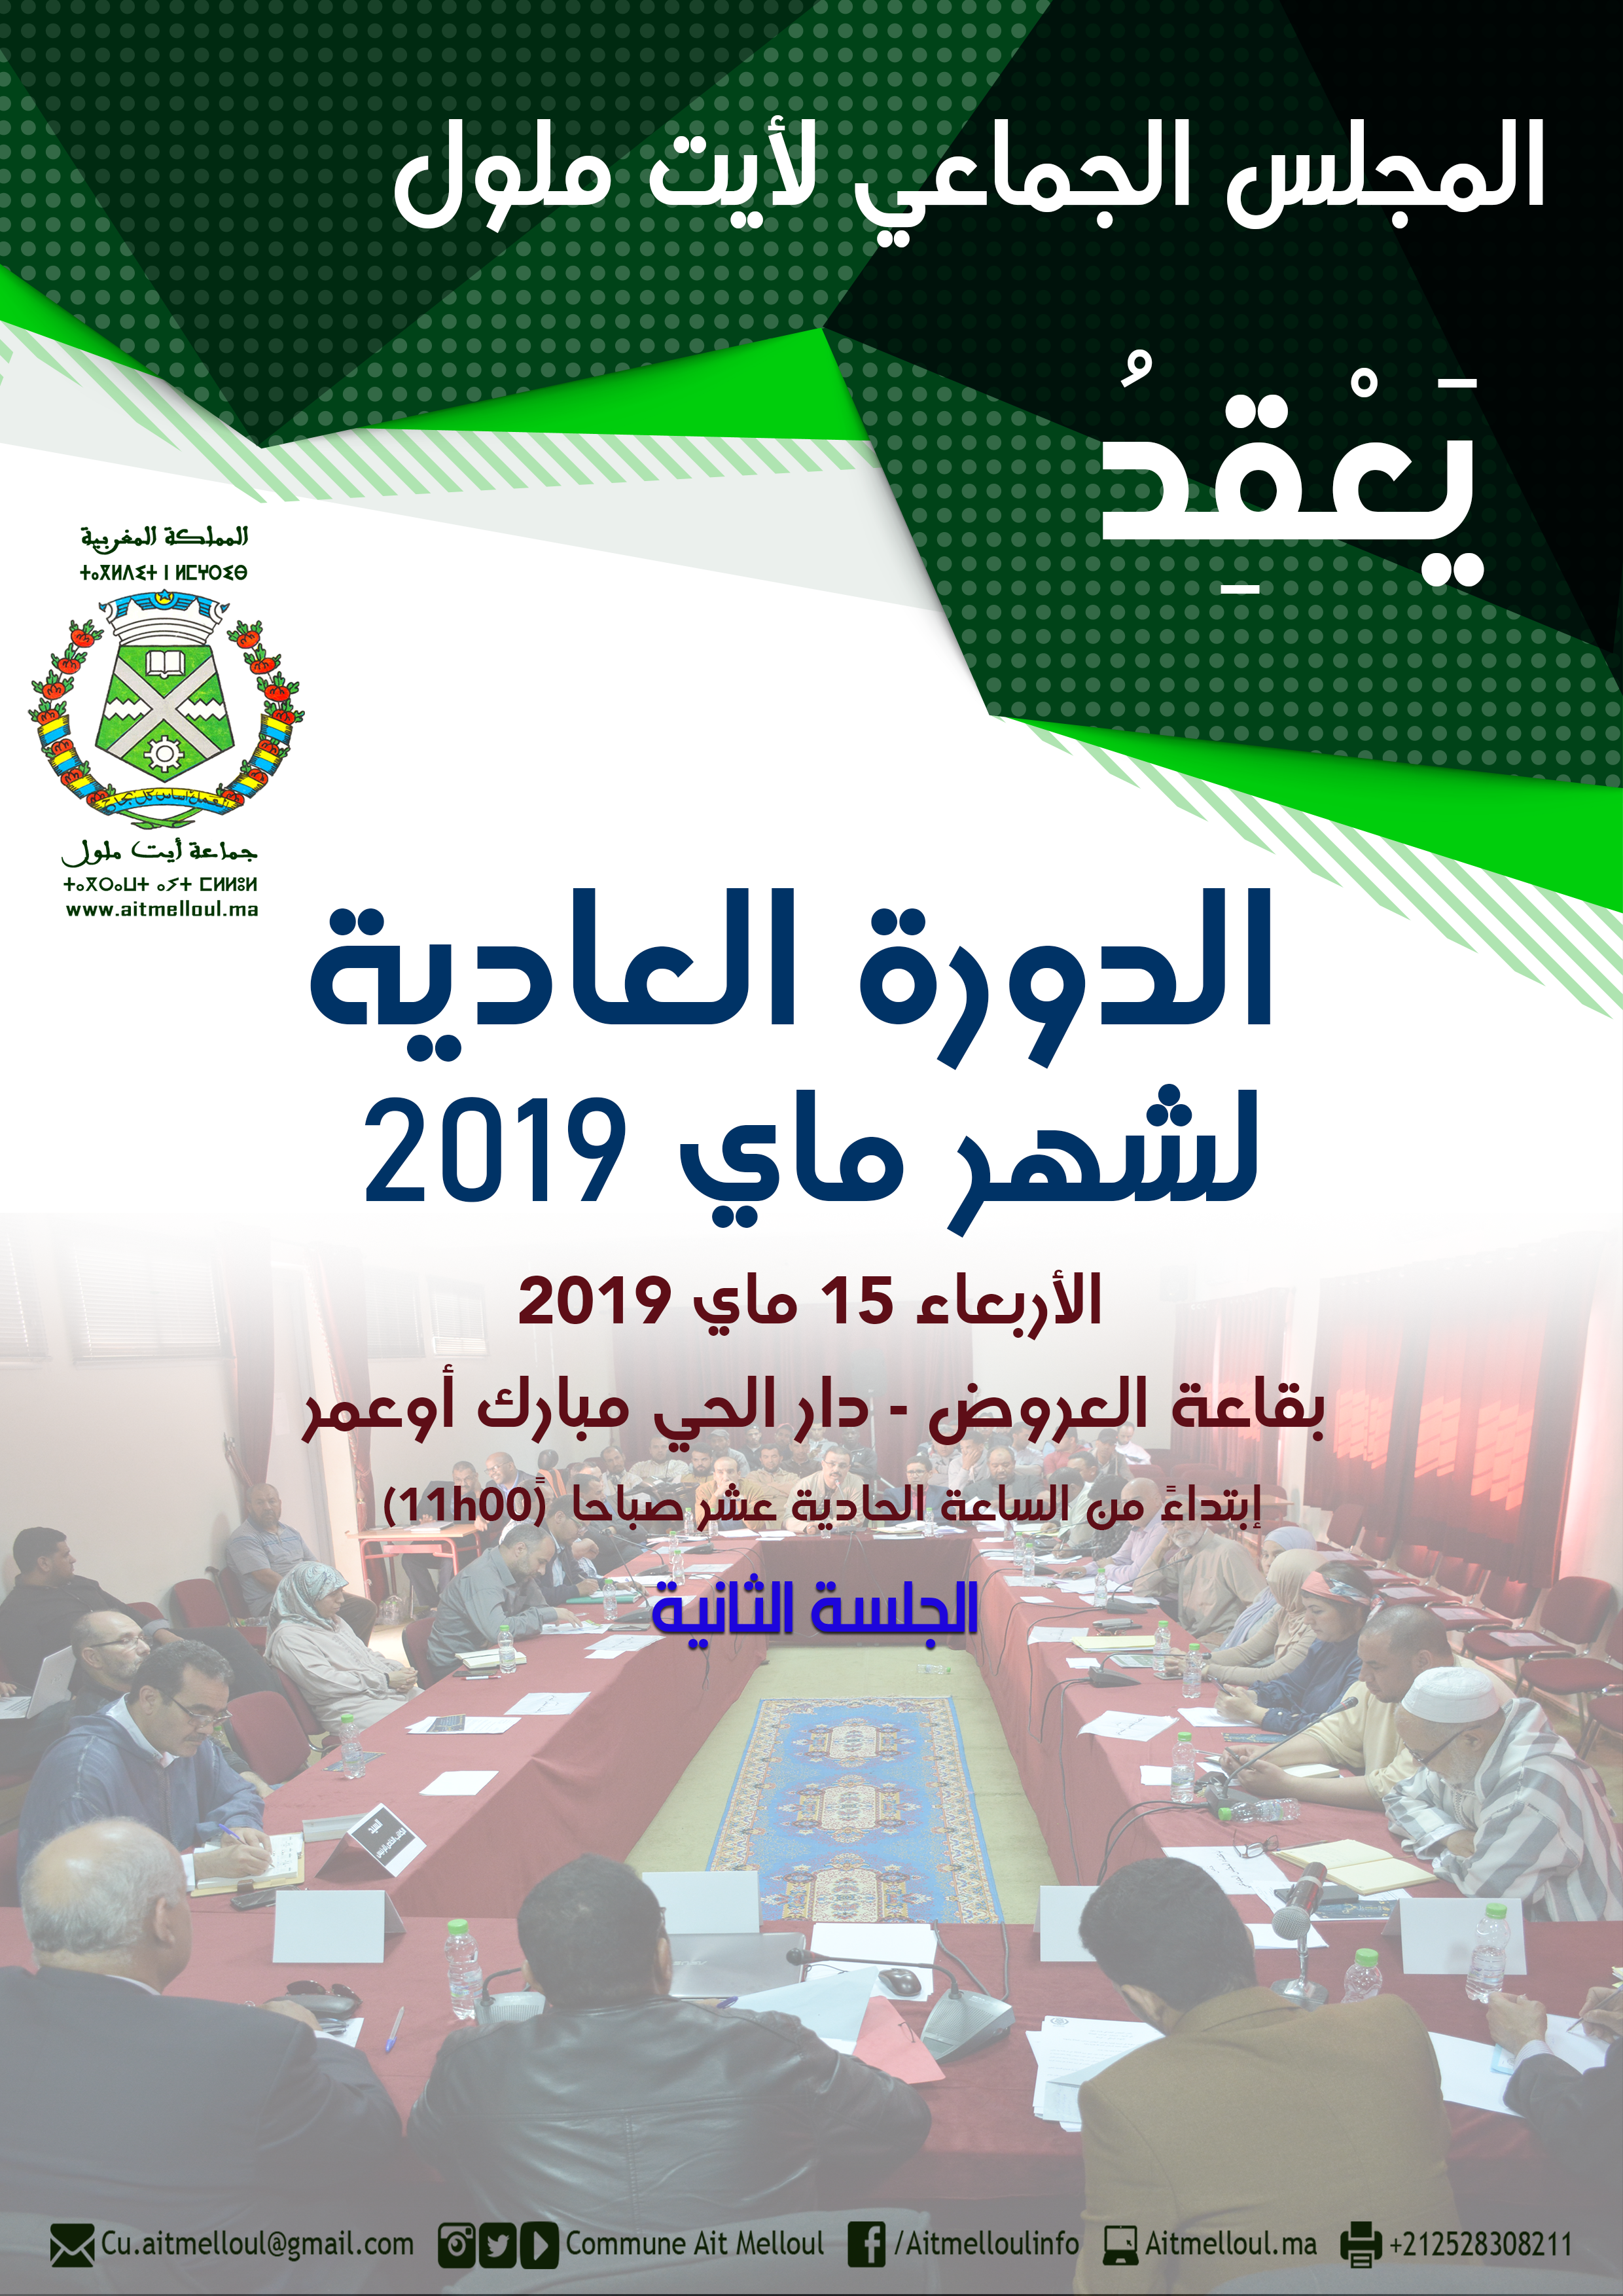 المجلس يعقد الجلسة الثانية للدورة العادية لشهر ماي 2019 ويناقش النقط المدرجة في جدول أعماله